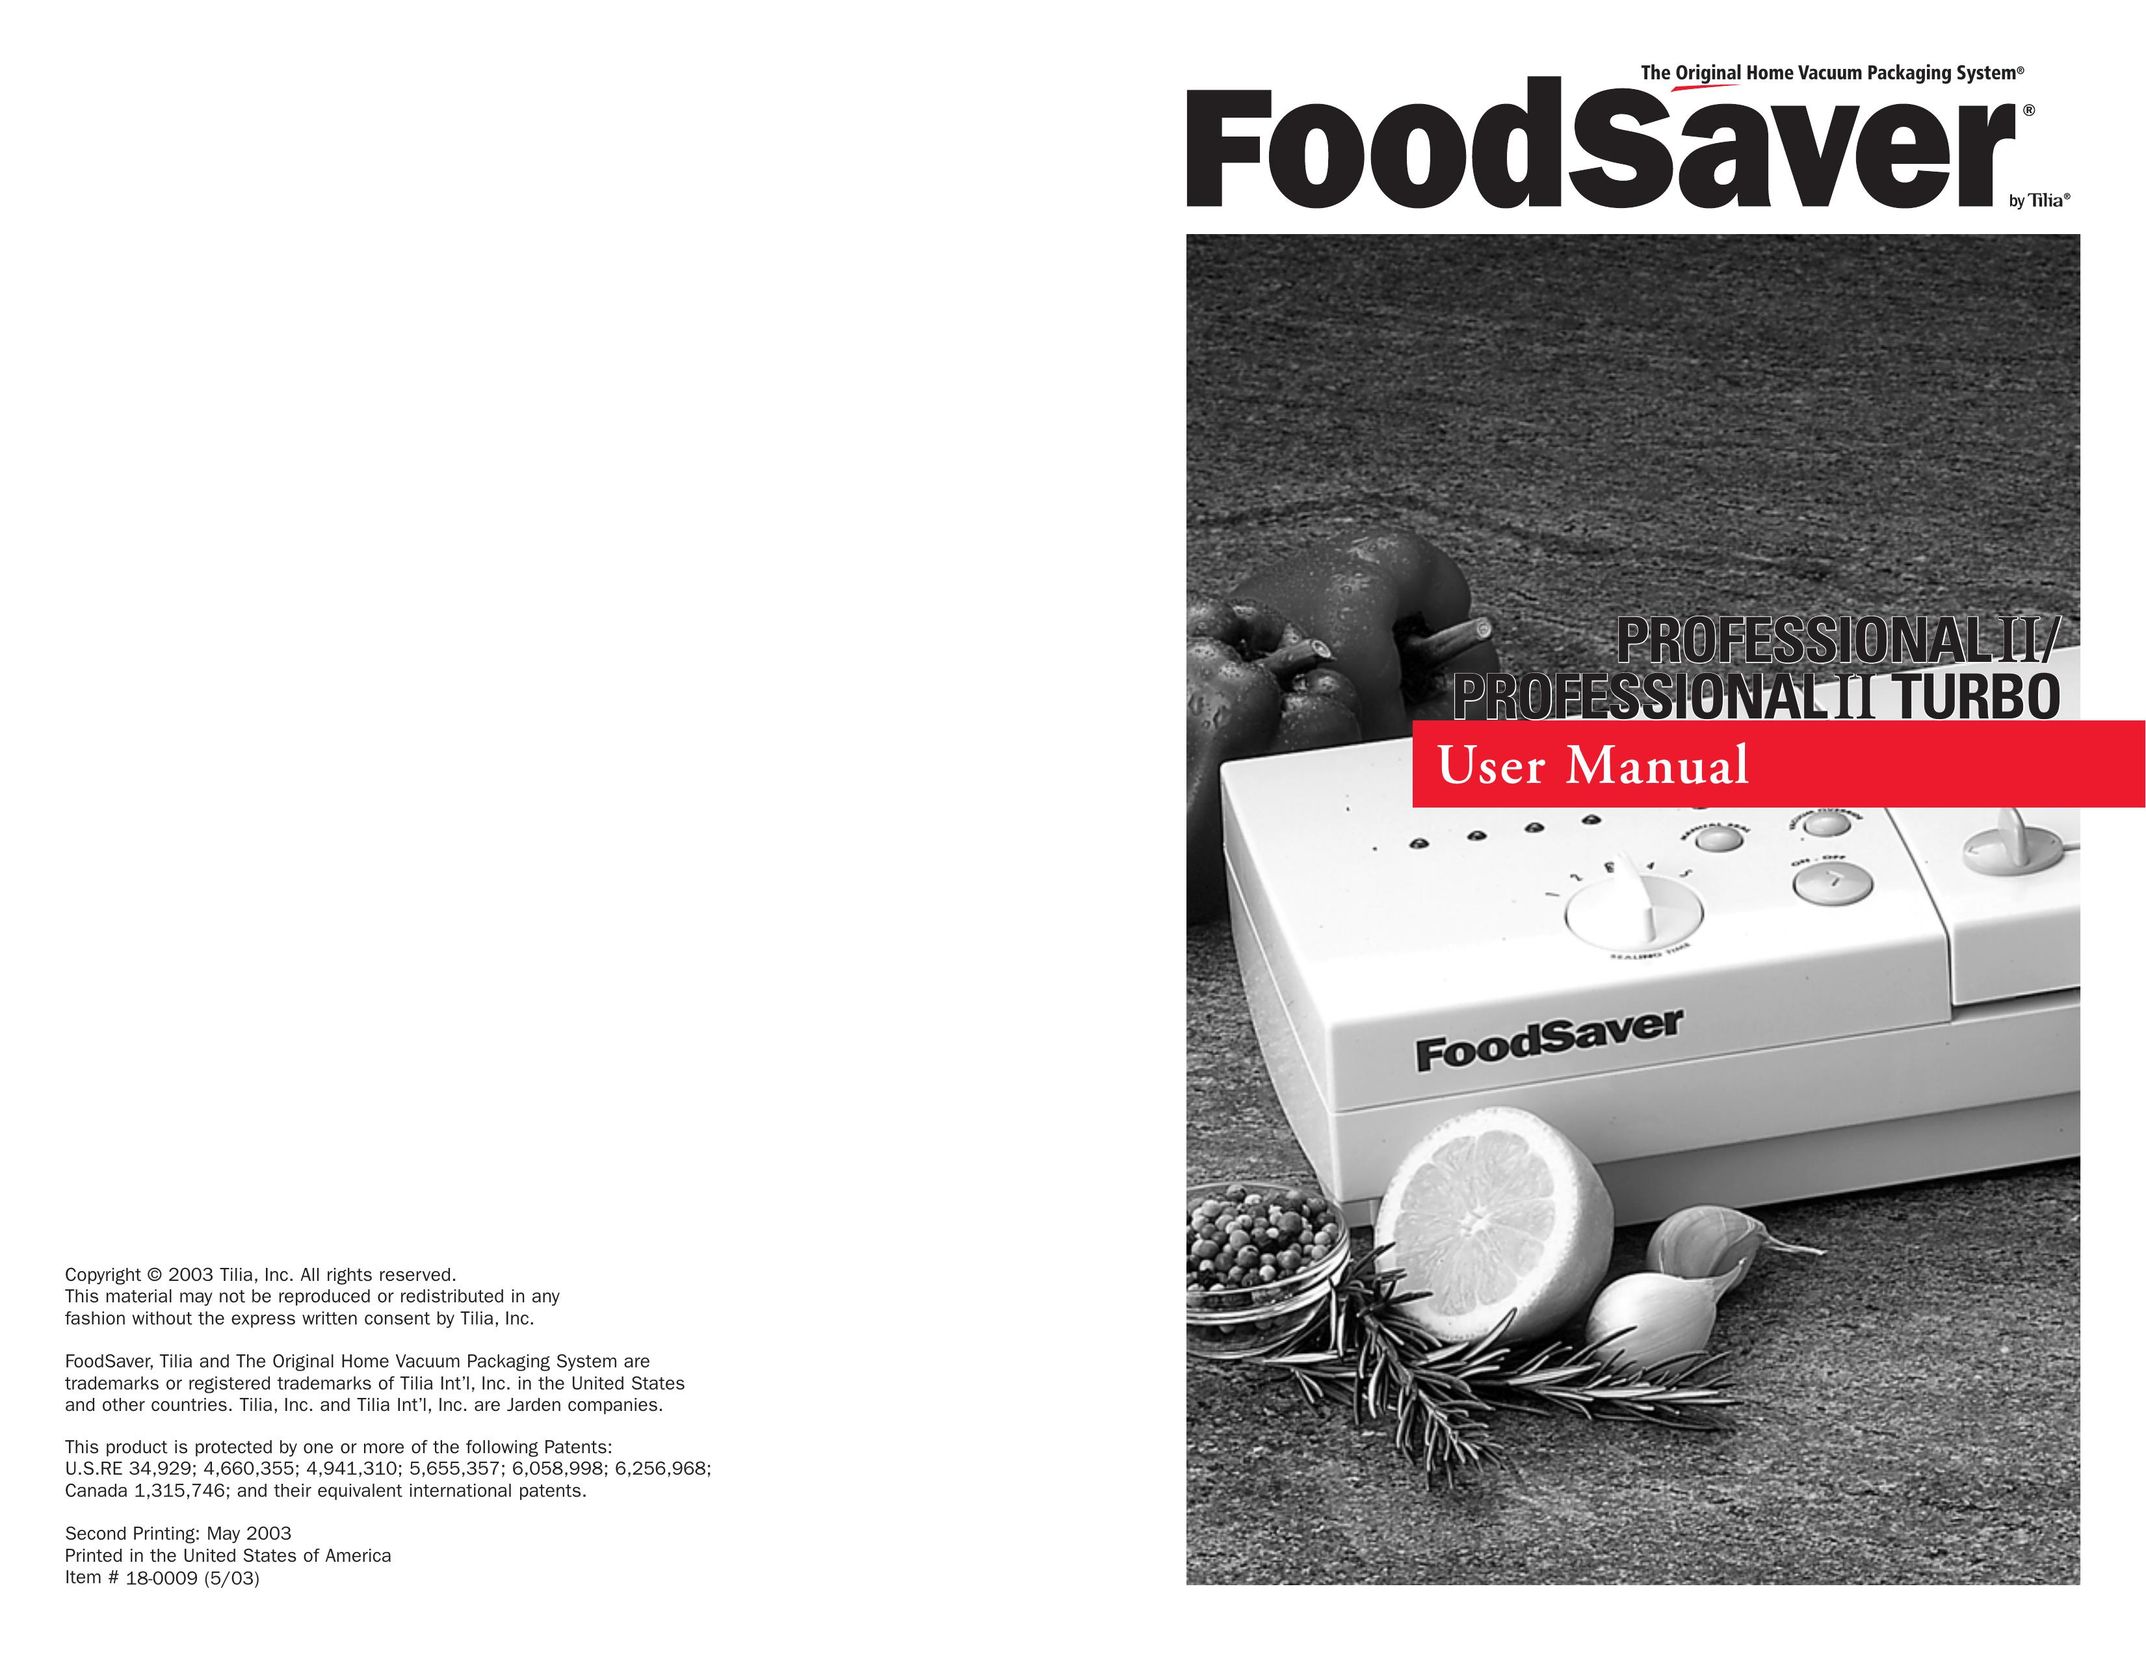 FoodSaver Professional II Food Saver User Manual